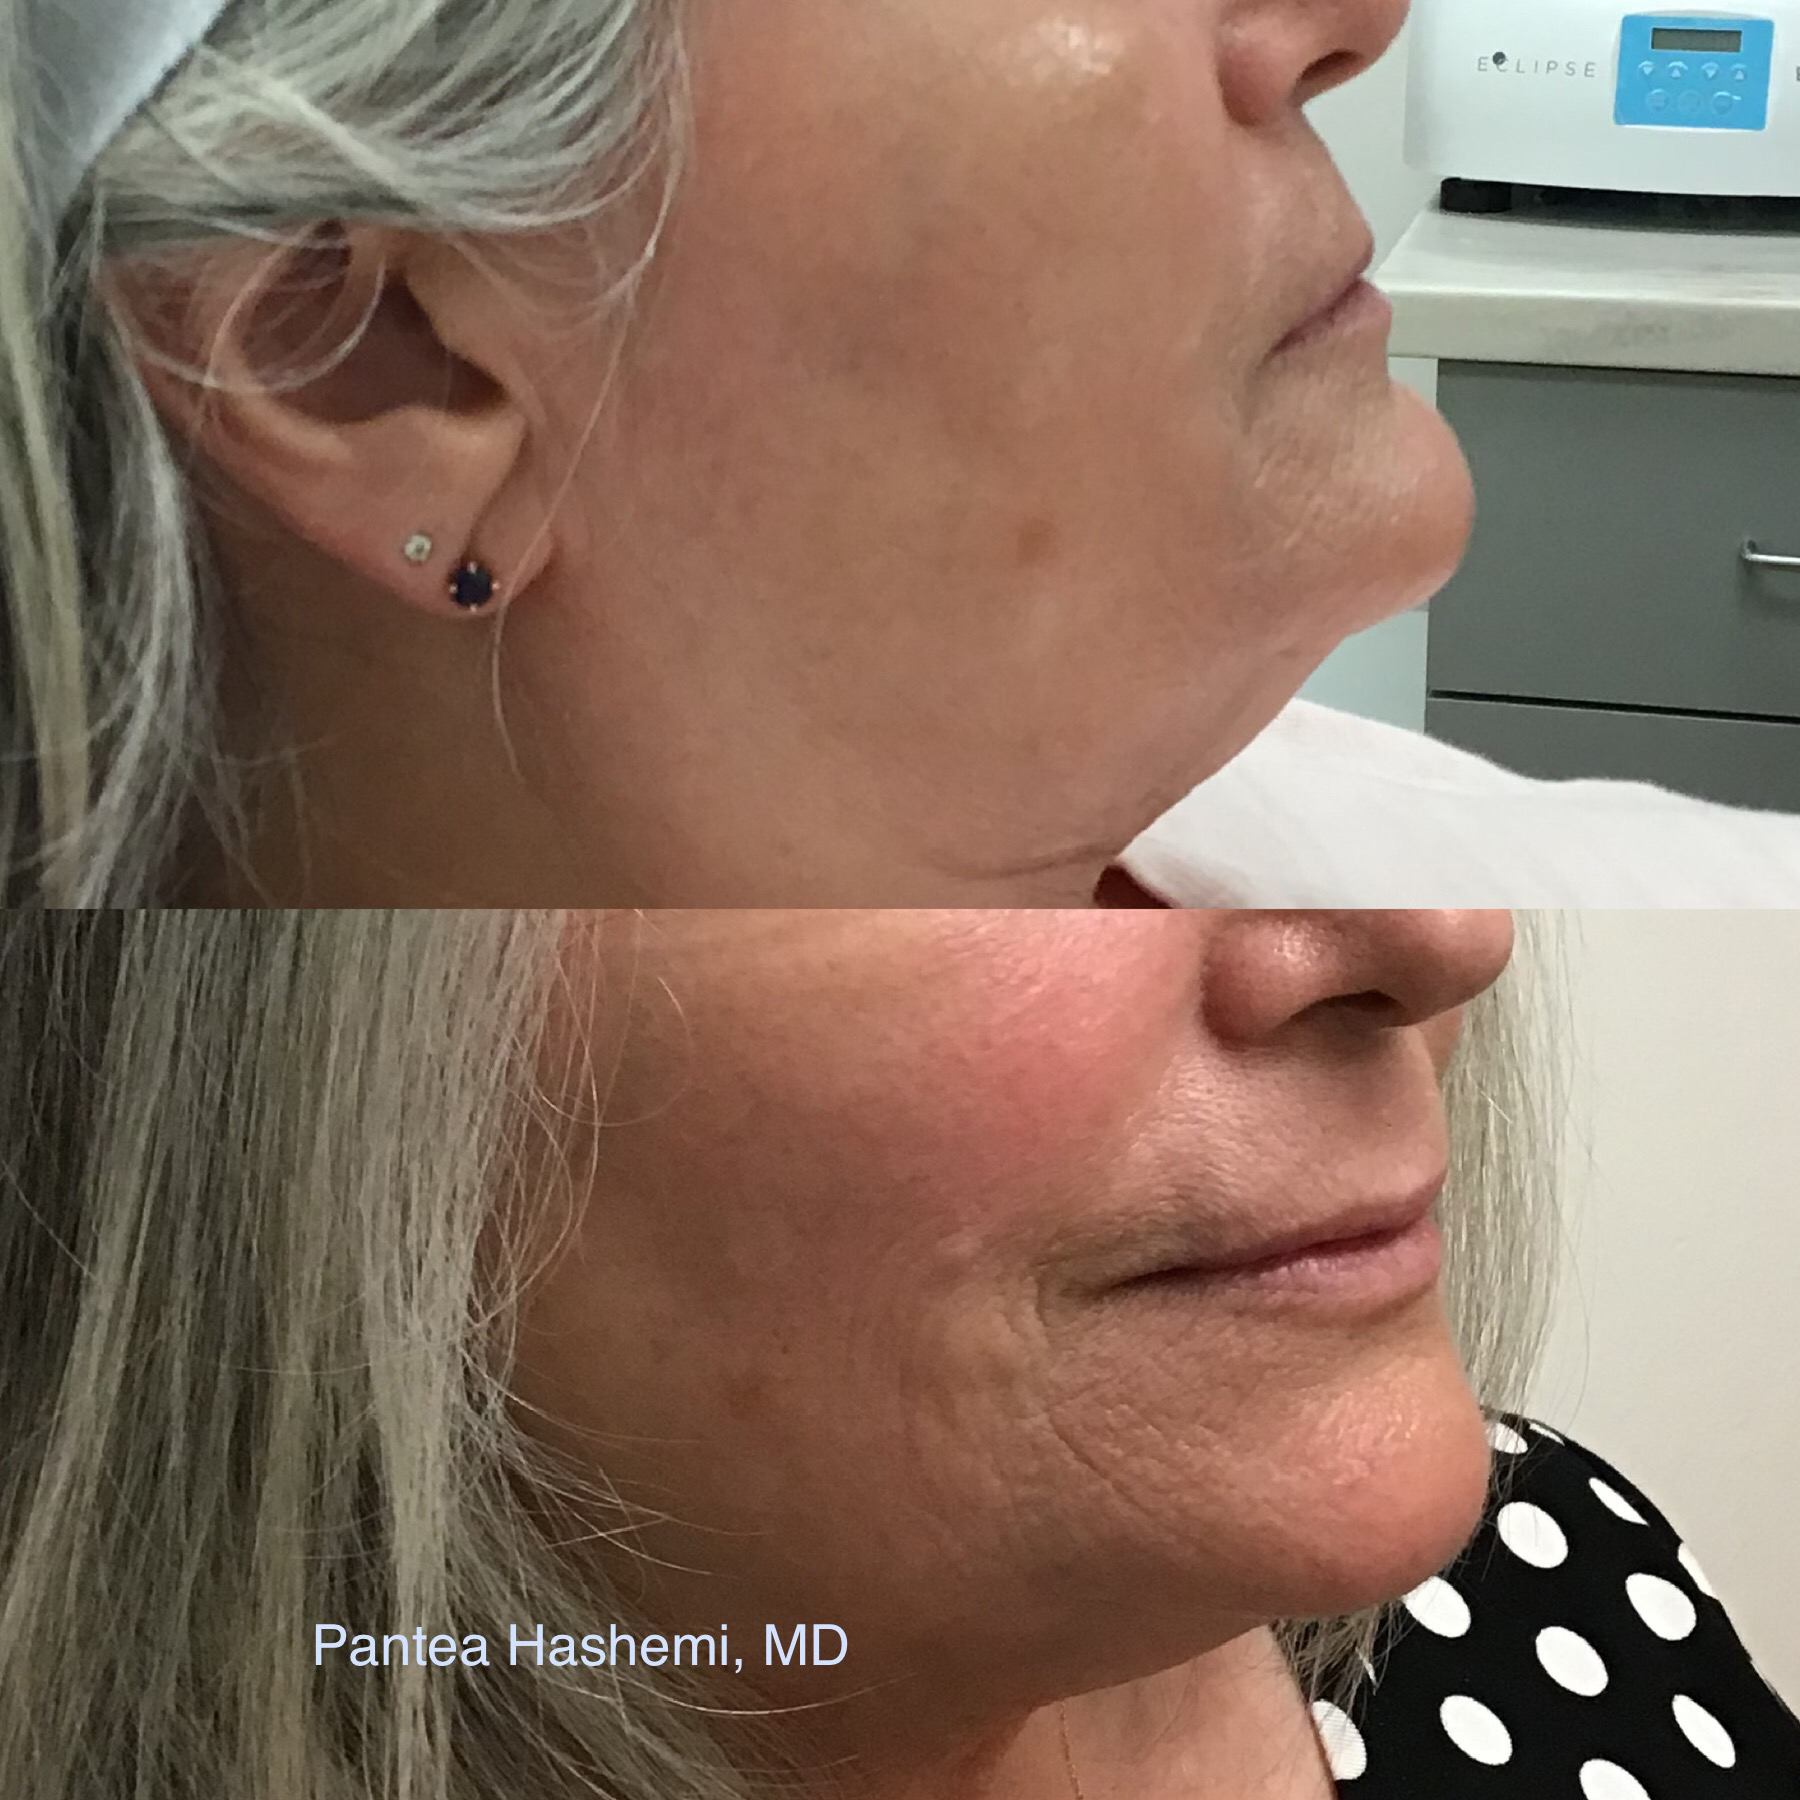 Lower face rejuvenation with RHA filler